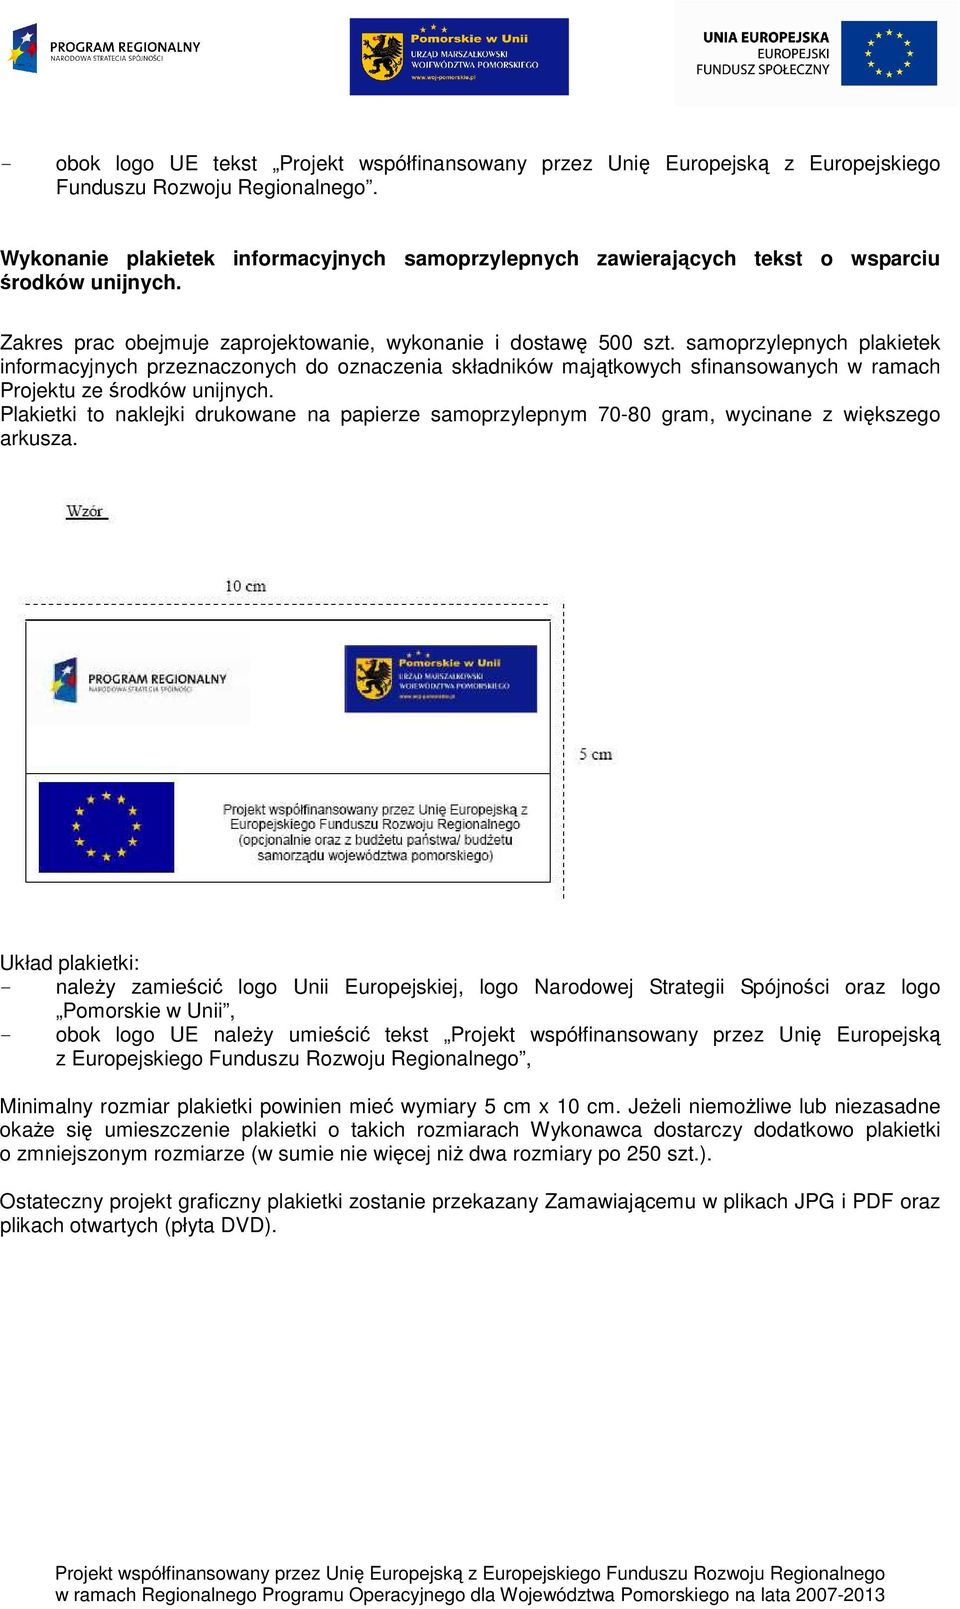 samoprzylepnych plakietek informacyjnych przeznaczonych do oznaczenia składników majątkowych sfinansowanych w ramach Projektu ze środków unijnych.